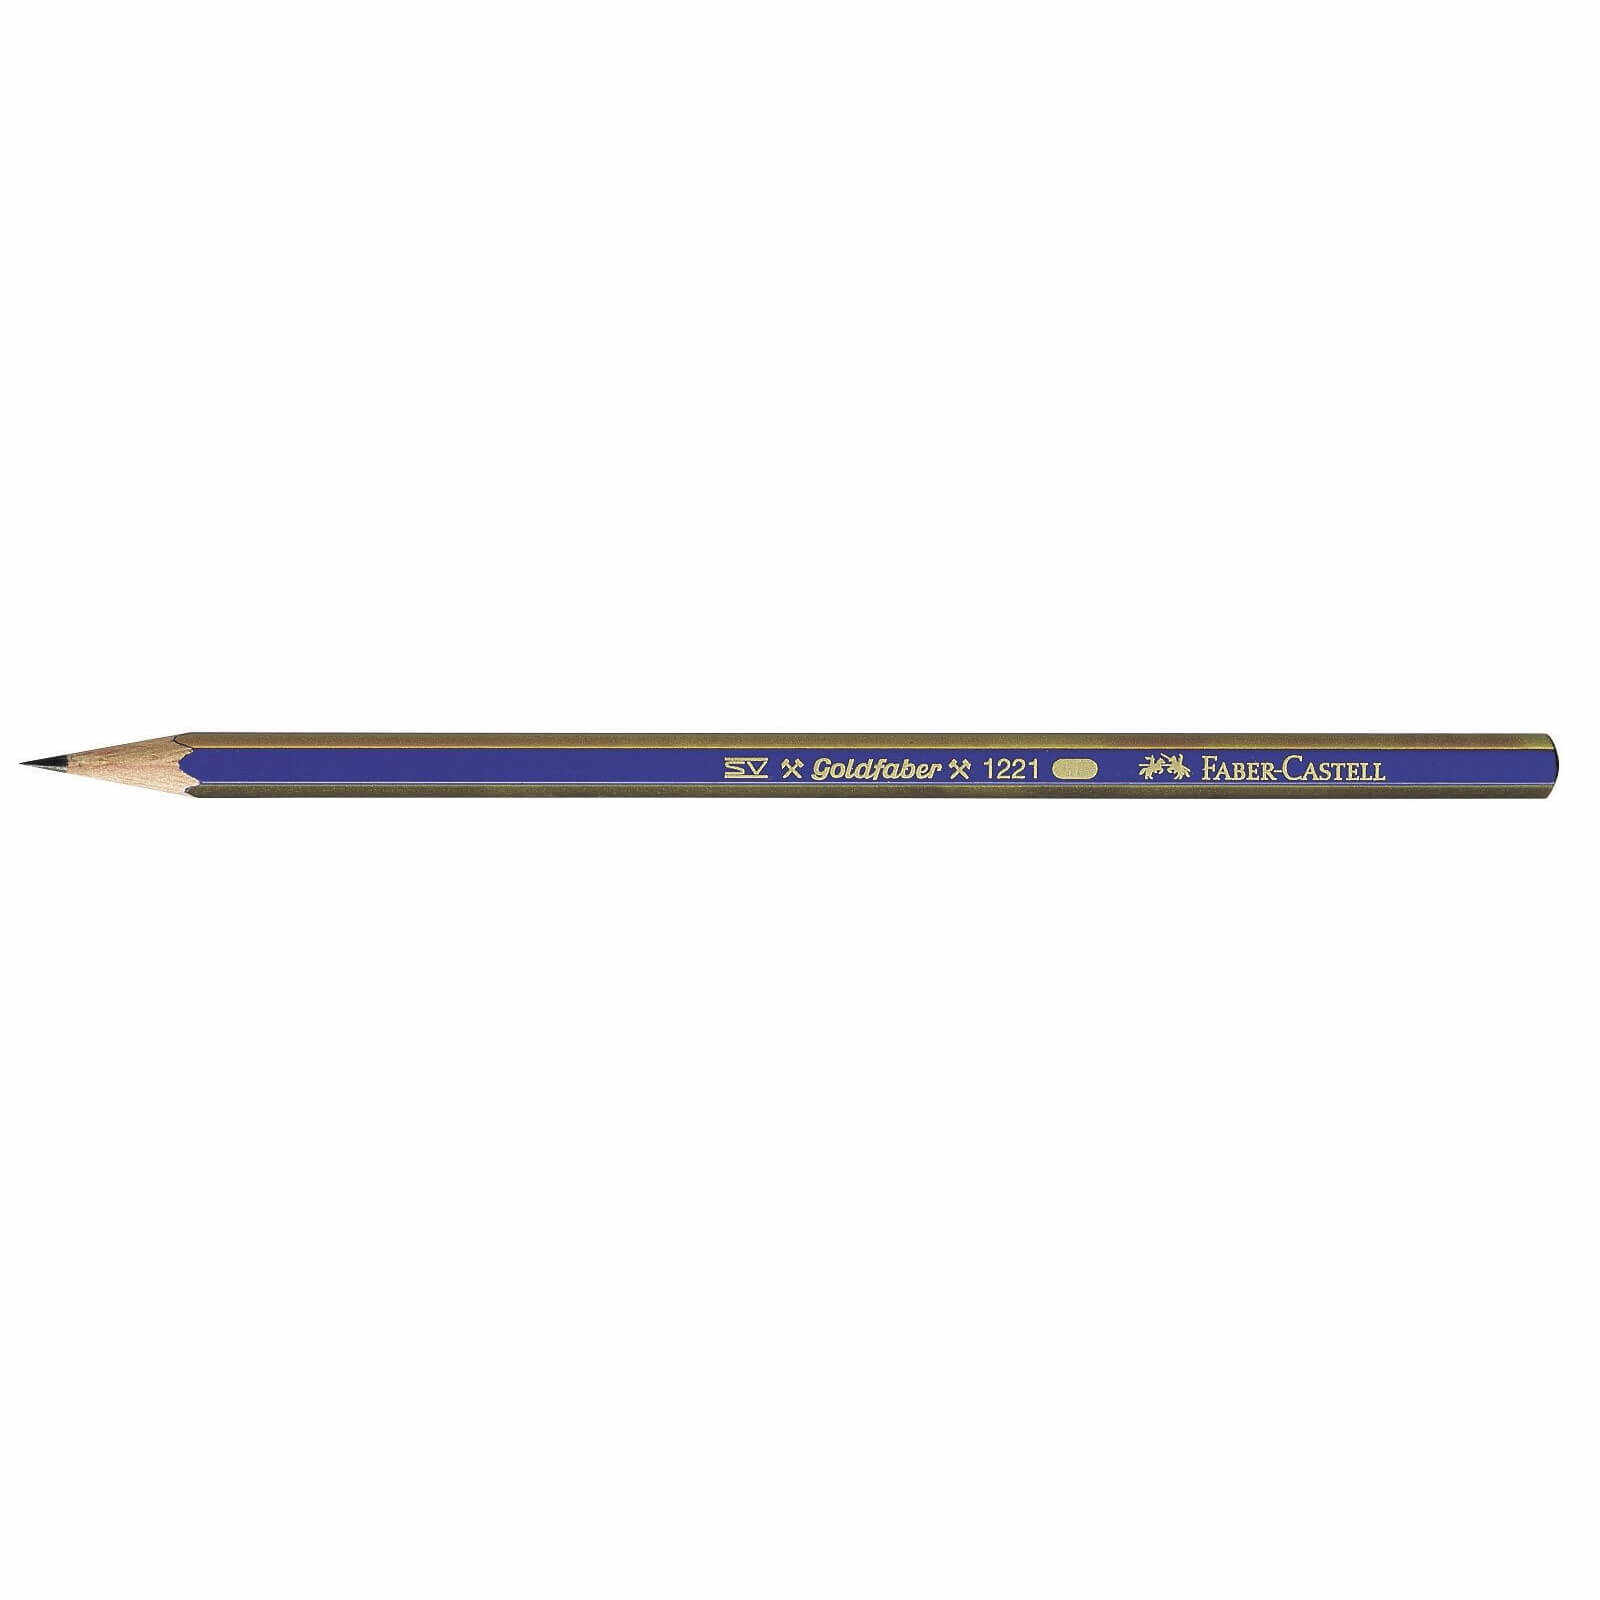 Creion grafit Goldfaber fara guma - 6B